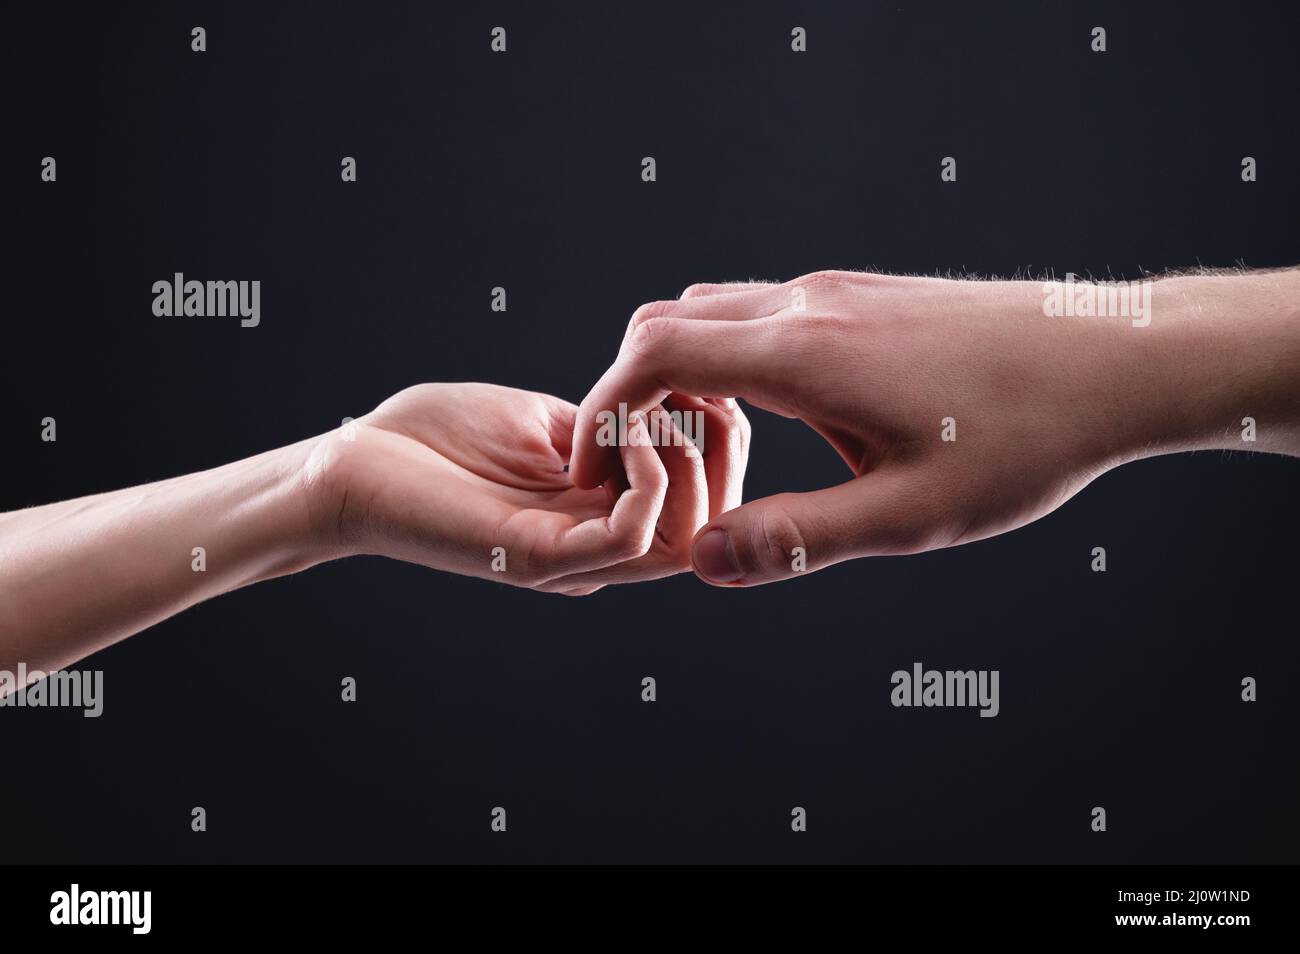 Zwei Hände, männlich und weiblich, halten sich aneinander und symbolisieren die Hilfe und gegenseitige Unterstützung zwischen Männern und Frauen auf einem schwarzen BA Stockfoto